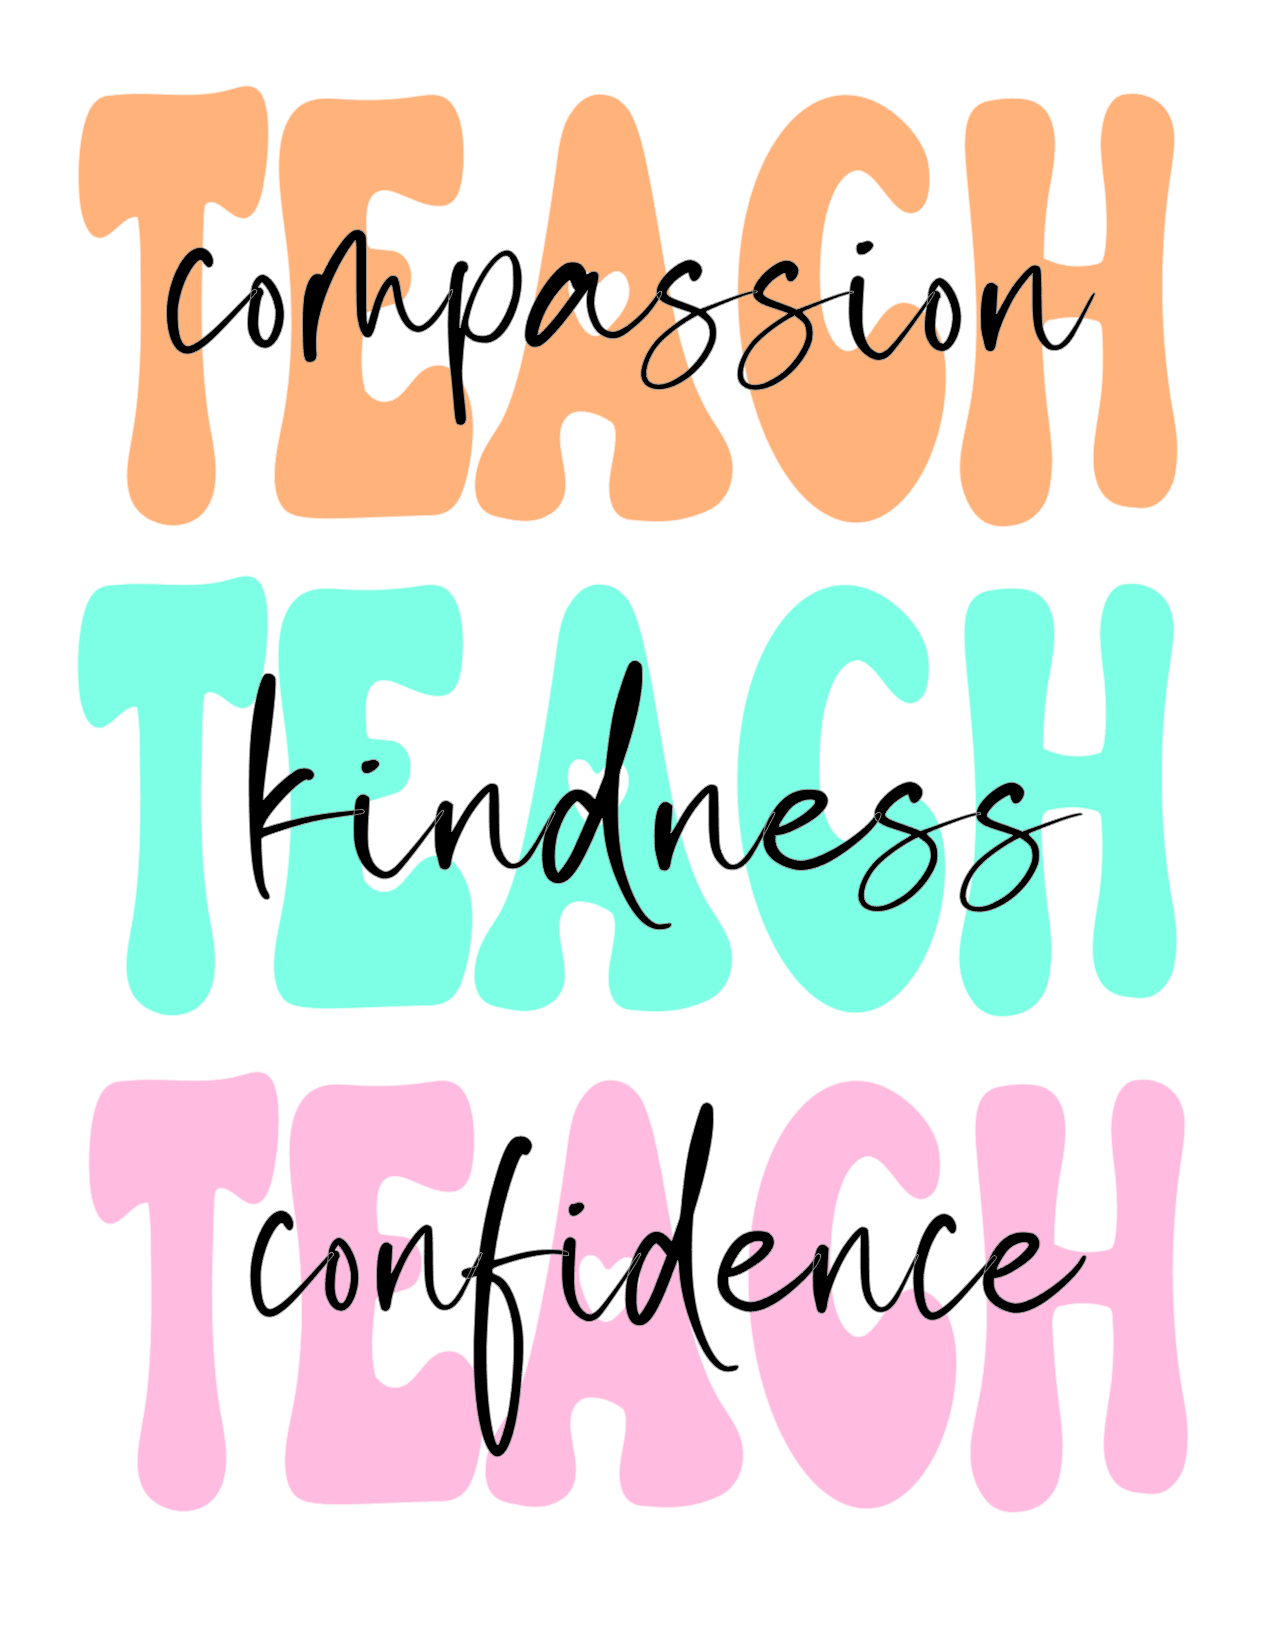 #170 TEACH compassion TEACH kindness TEACH confidence